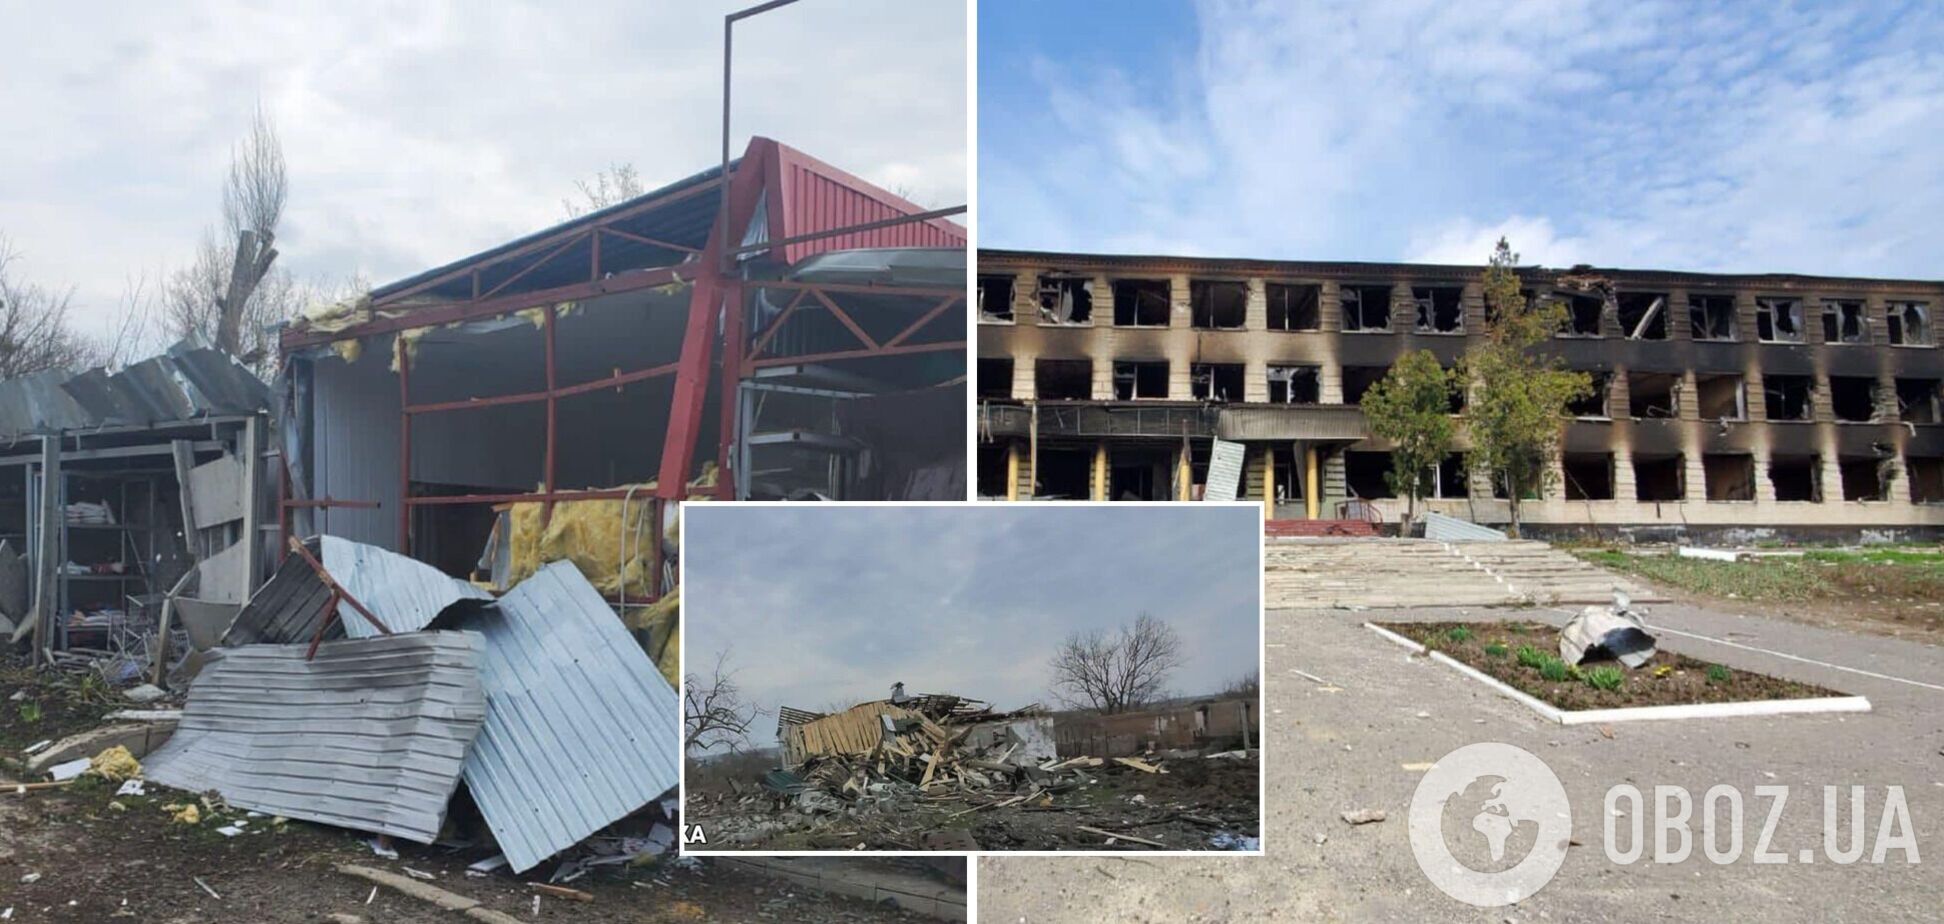 Ольховка в Харьковской области почти полностью уничтожена